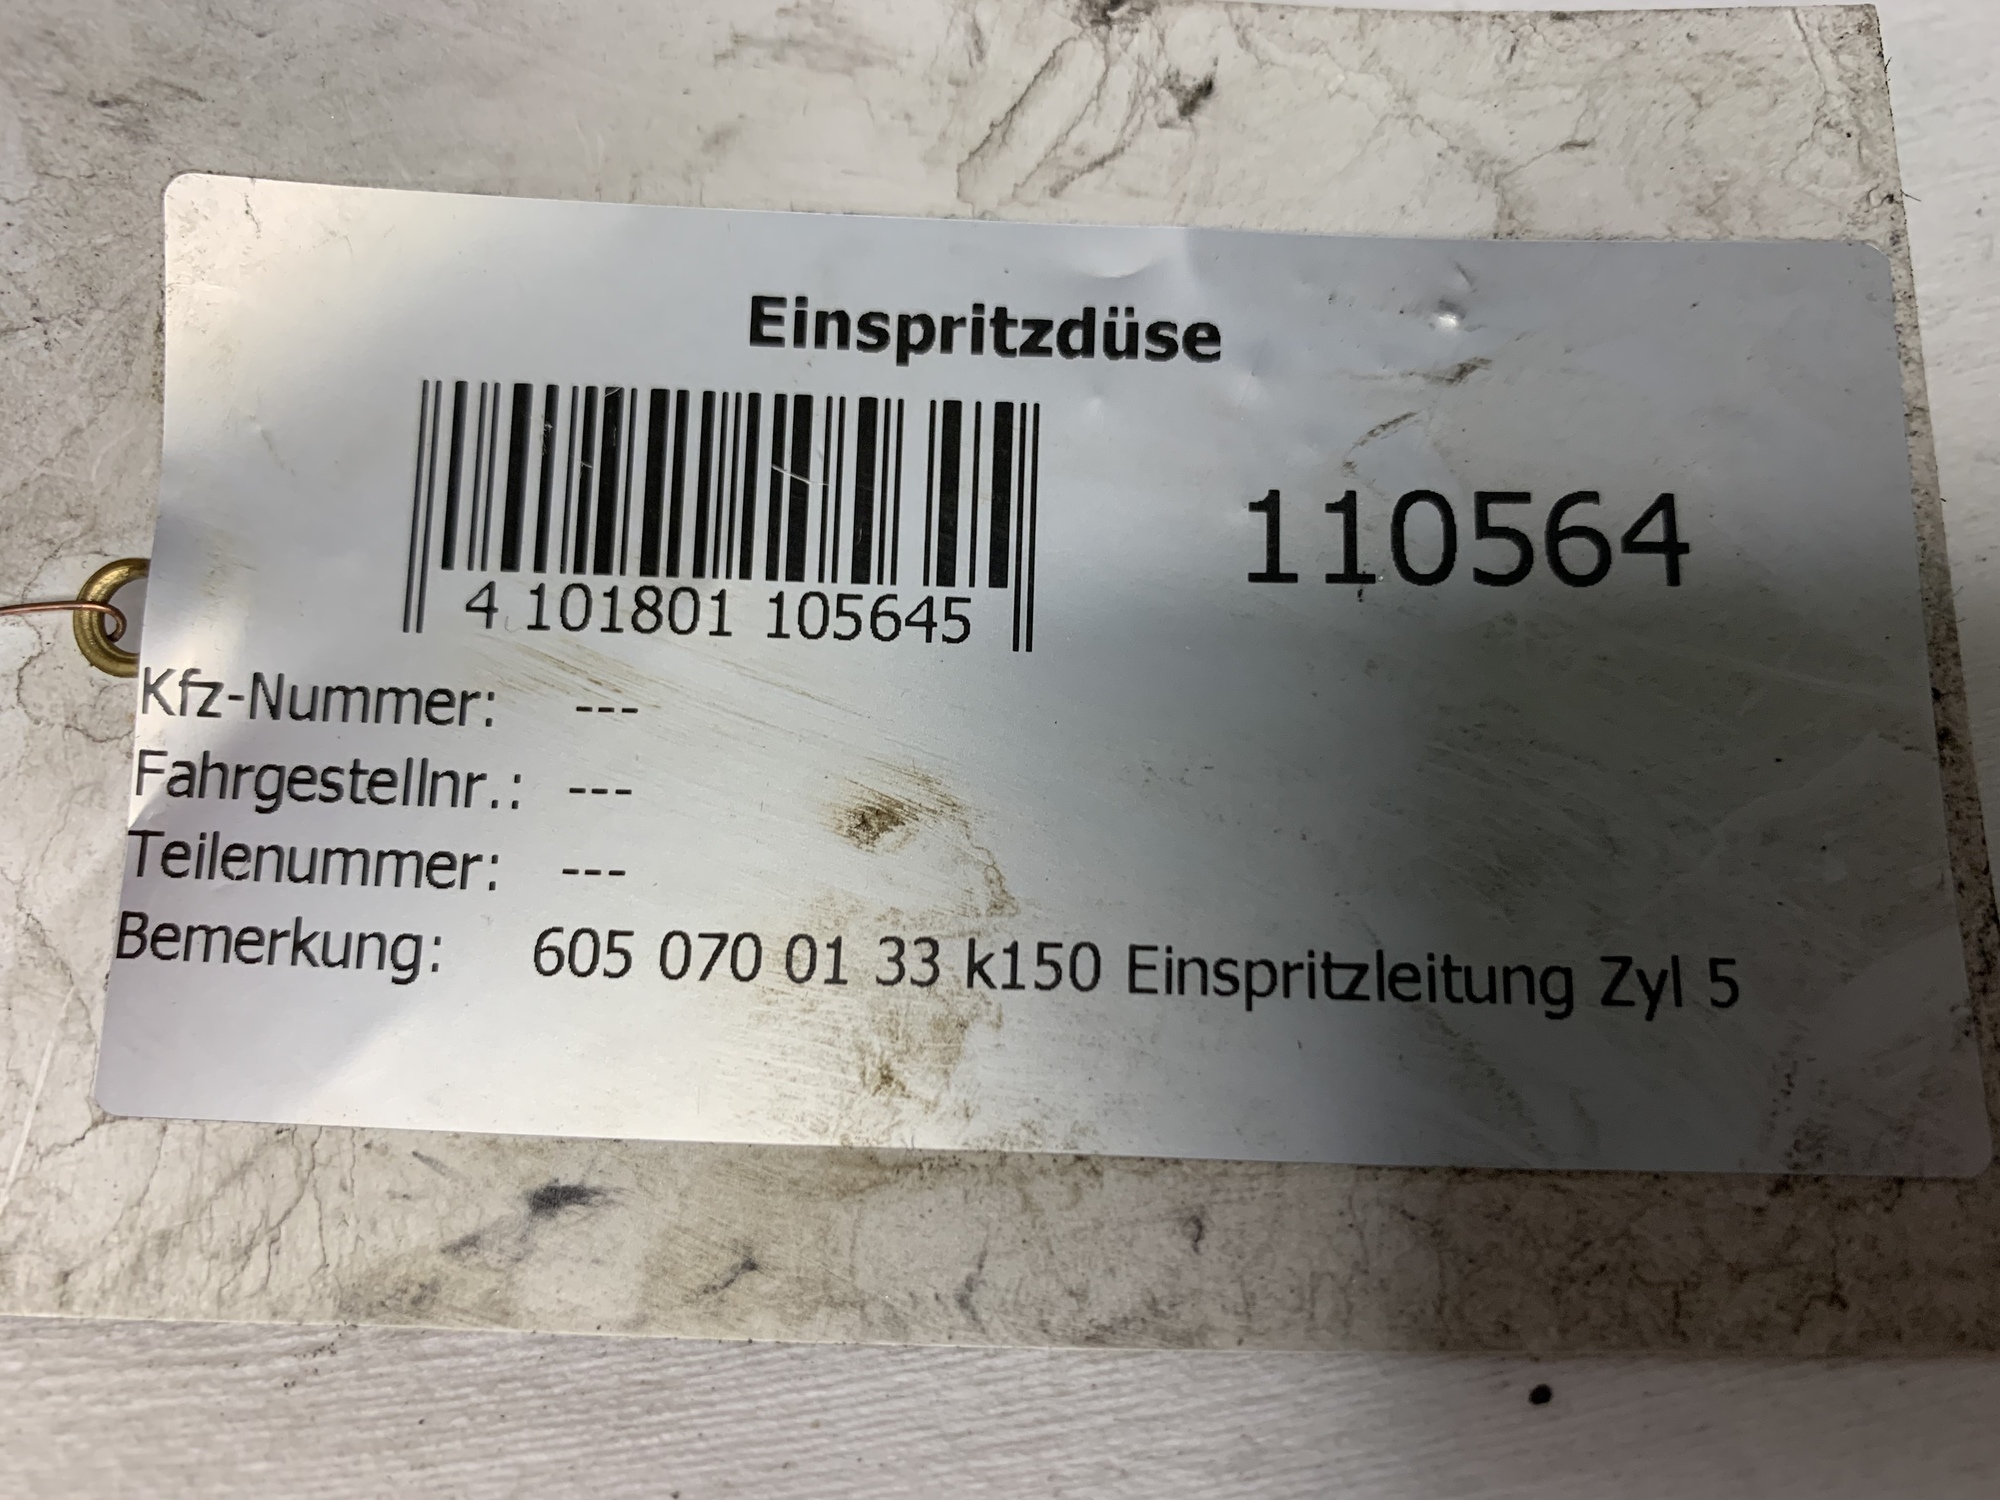 EINSPRITZLEITUNG ZYL 5 für Mercedes (6050700133)